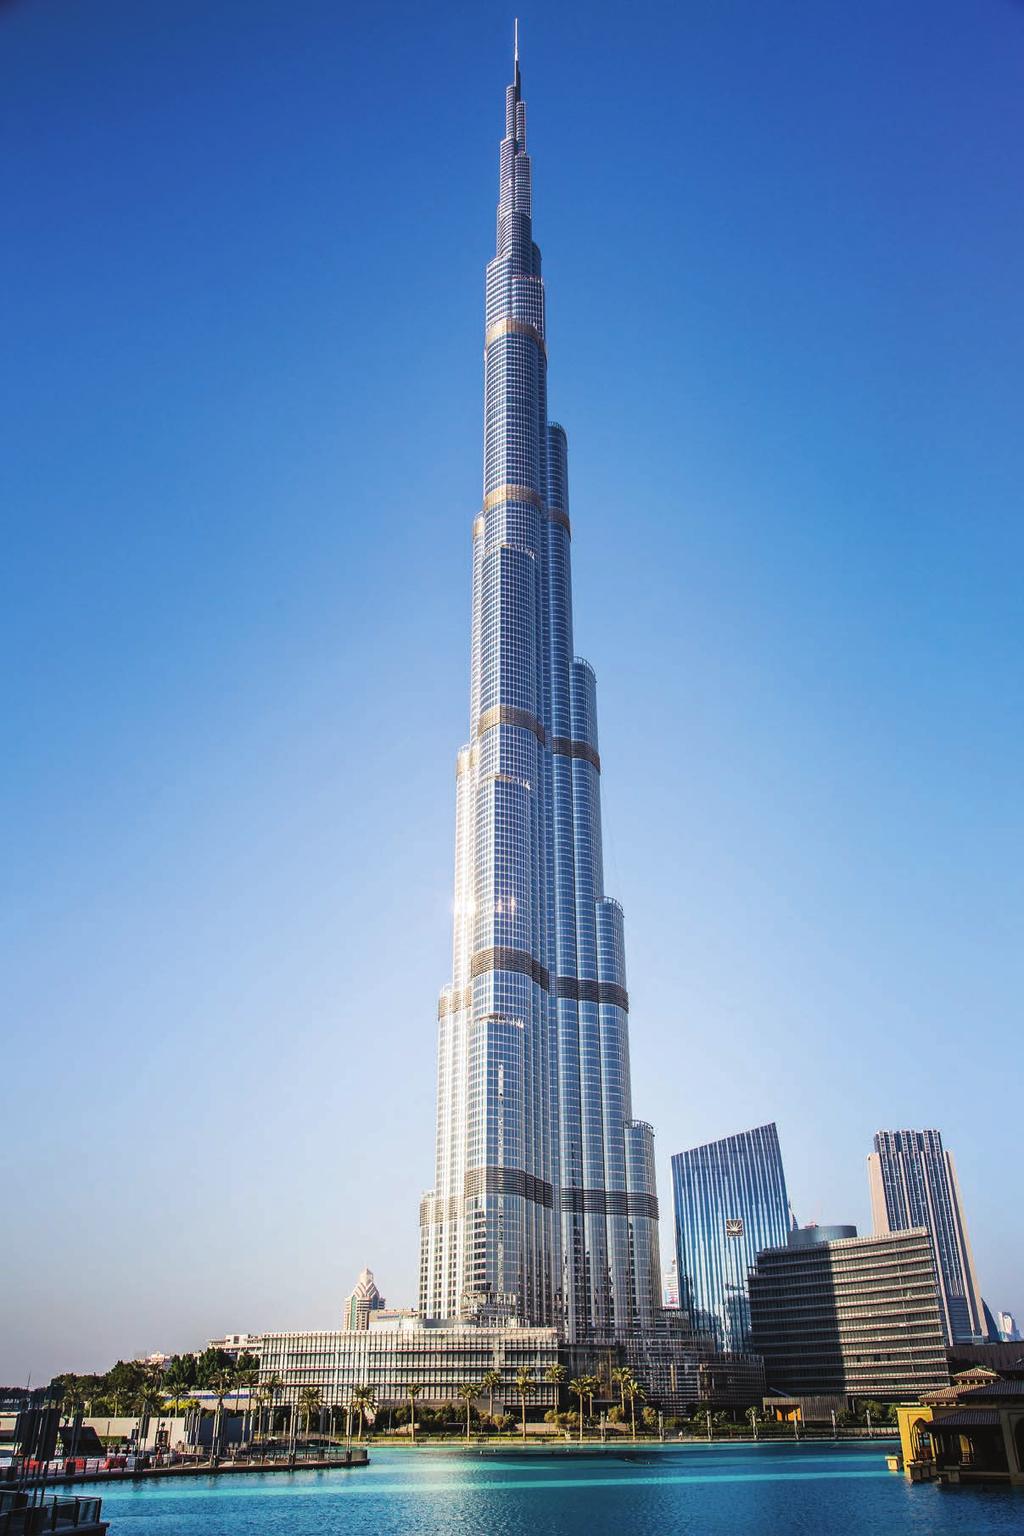 Opisane zastosowania to tylko kilka przykładów, więcej znajdziesz na xyleminc.com Burj Khalifa, Dubai, UAE. Oficjalne otwarcie Burj Khalifa nastąpiło w 2010.